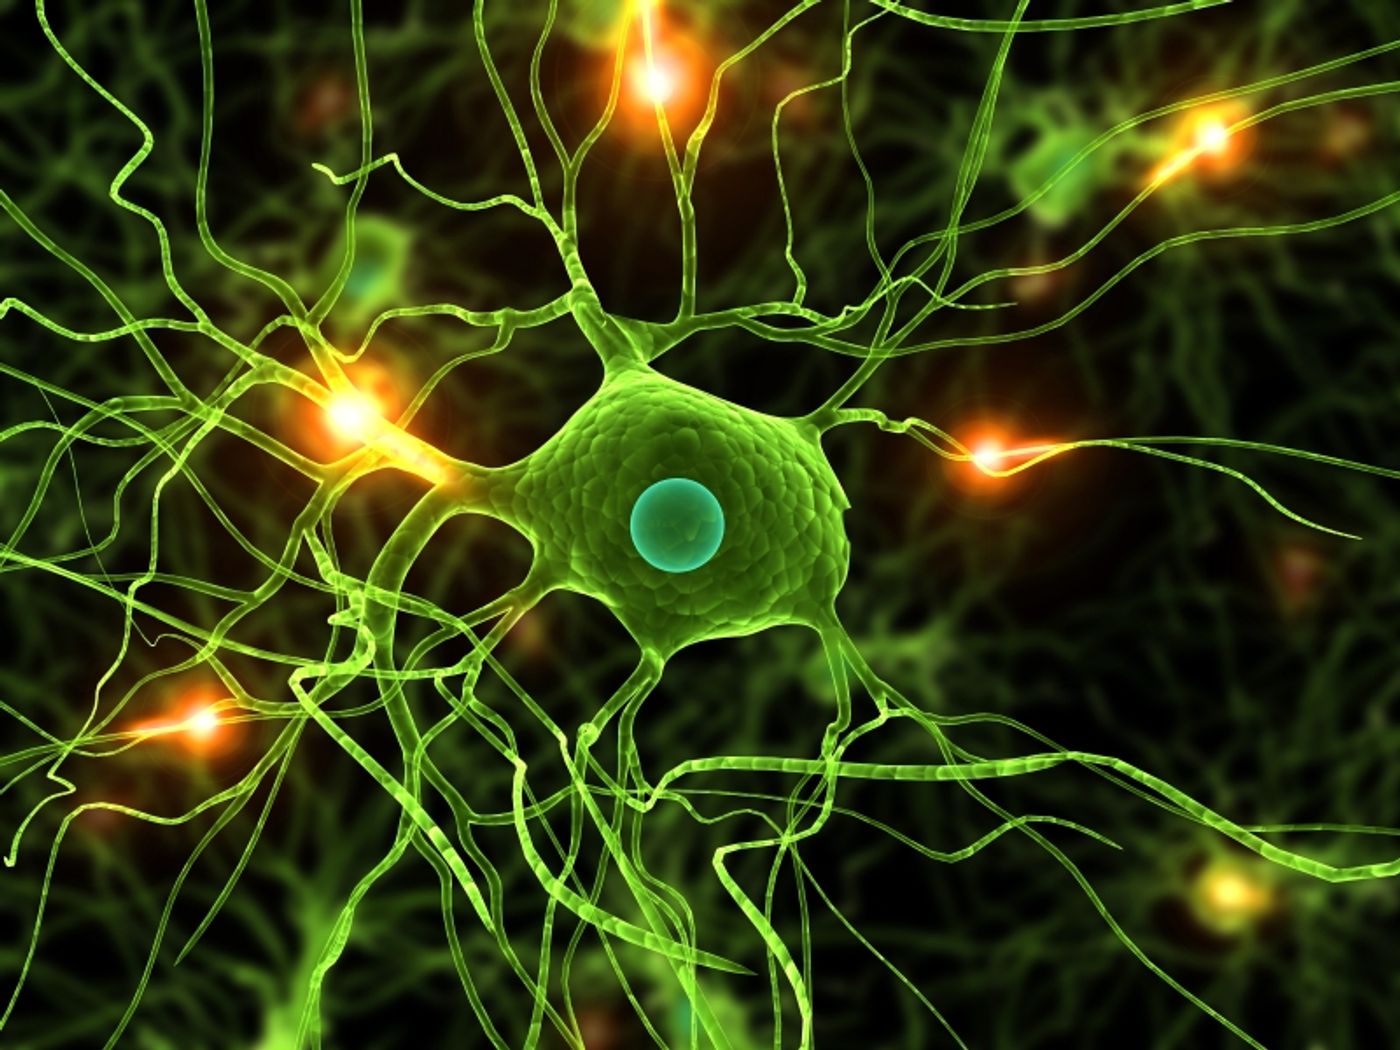 Microglia and neuron synapses